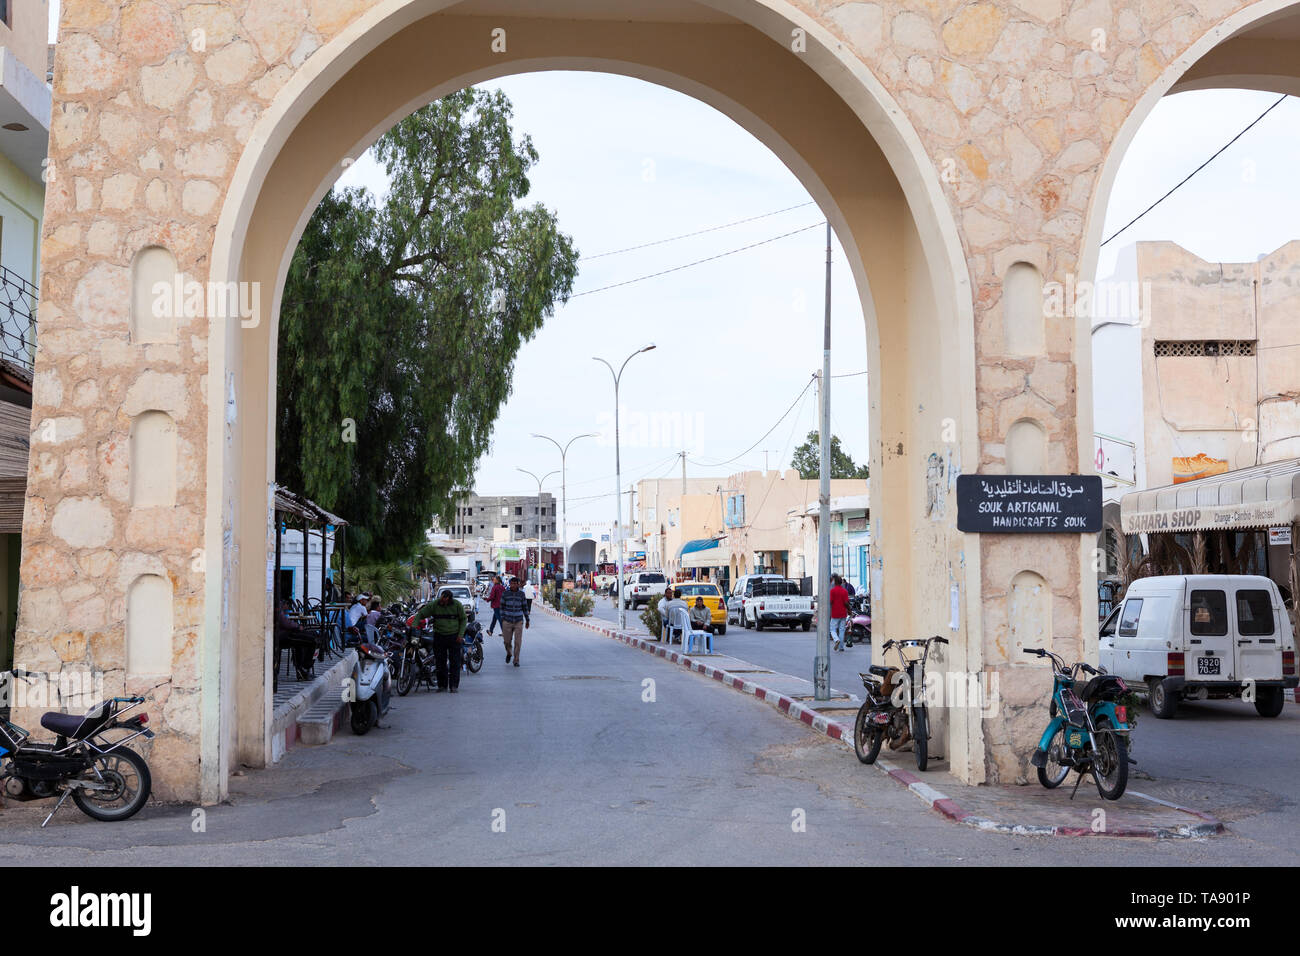 SOUSSE, Tunisie, Afrique-vers mai, 2012 : Arch est à l'entrée du centre de la ville africaine. Petites rues de ville tunisienne avec la vie quotidienne Banque D'Images